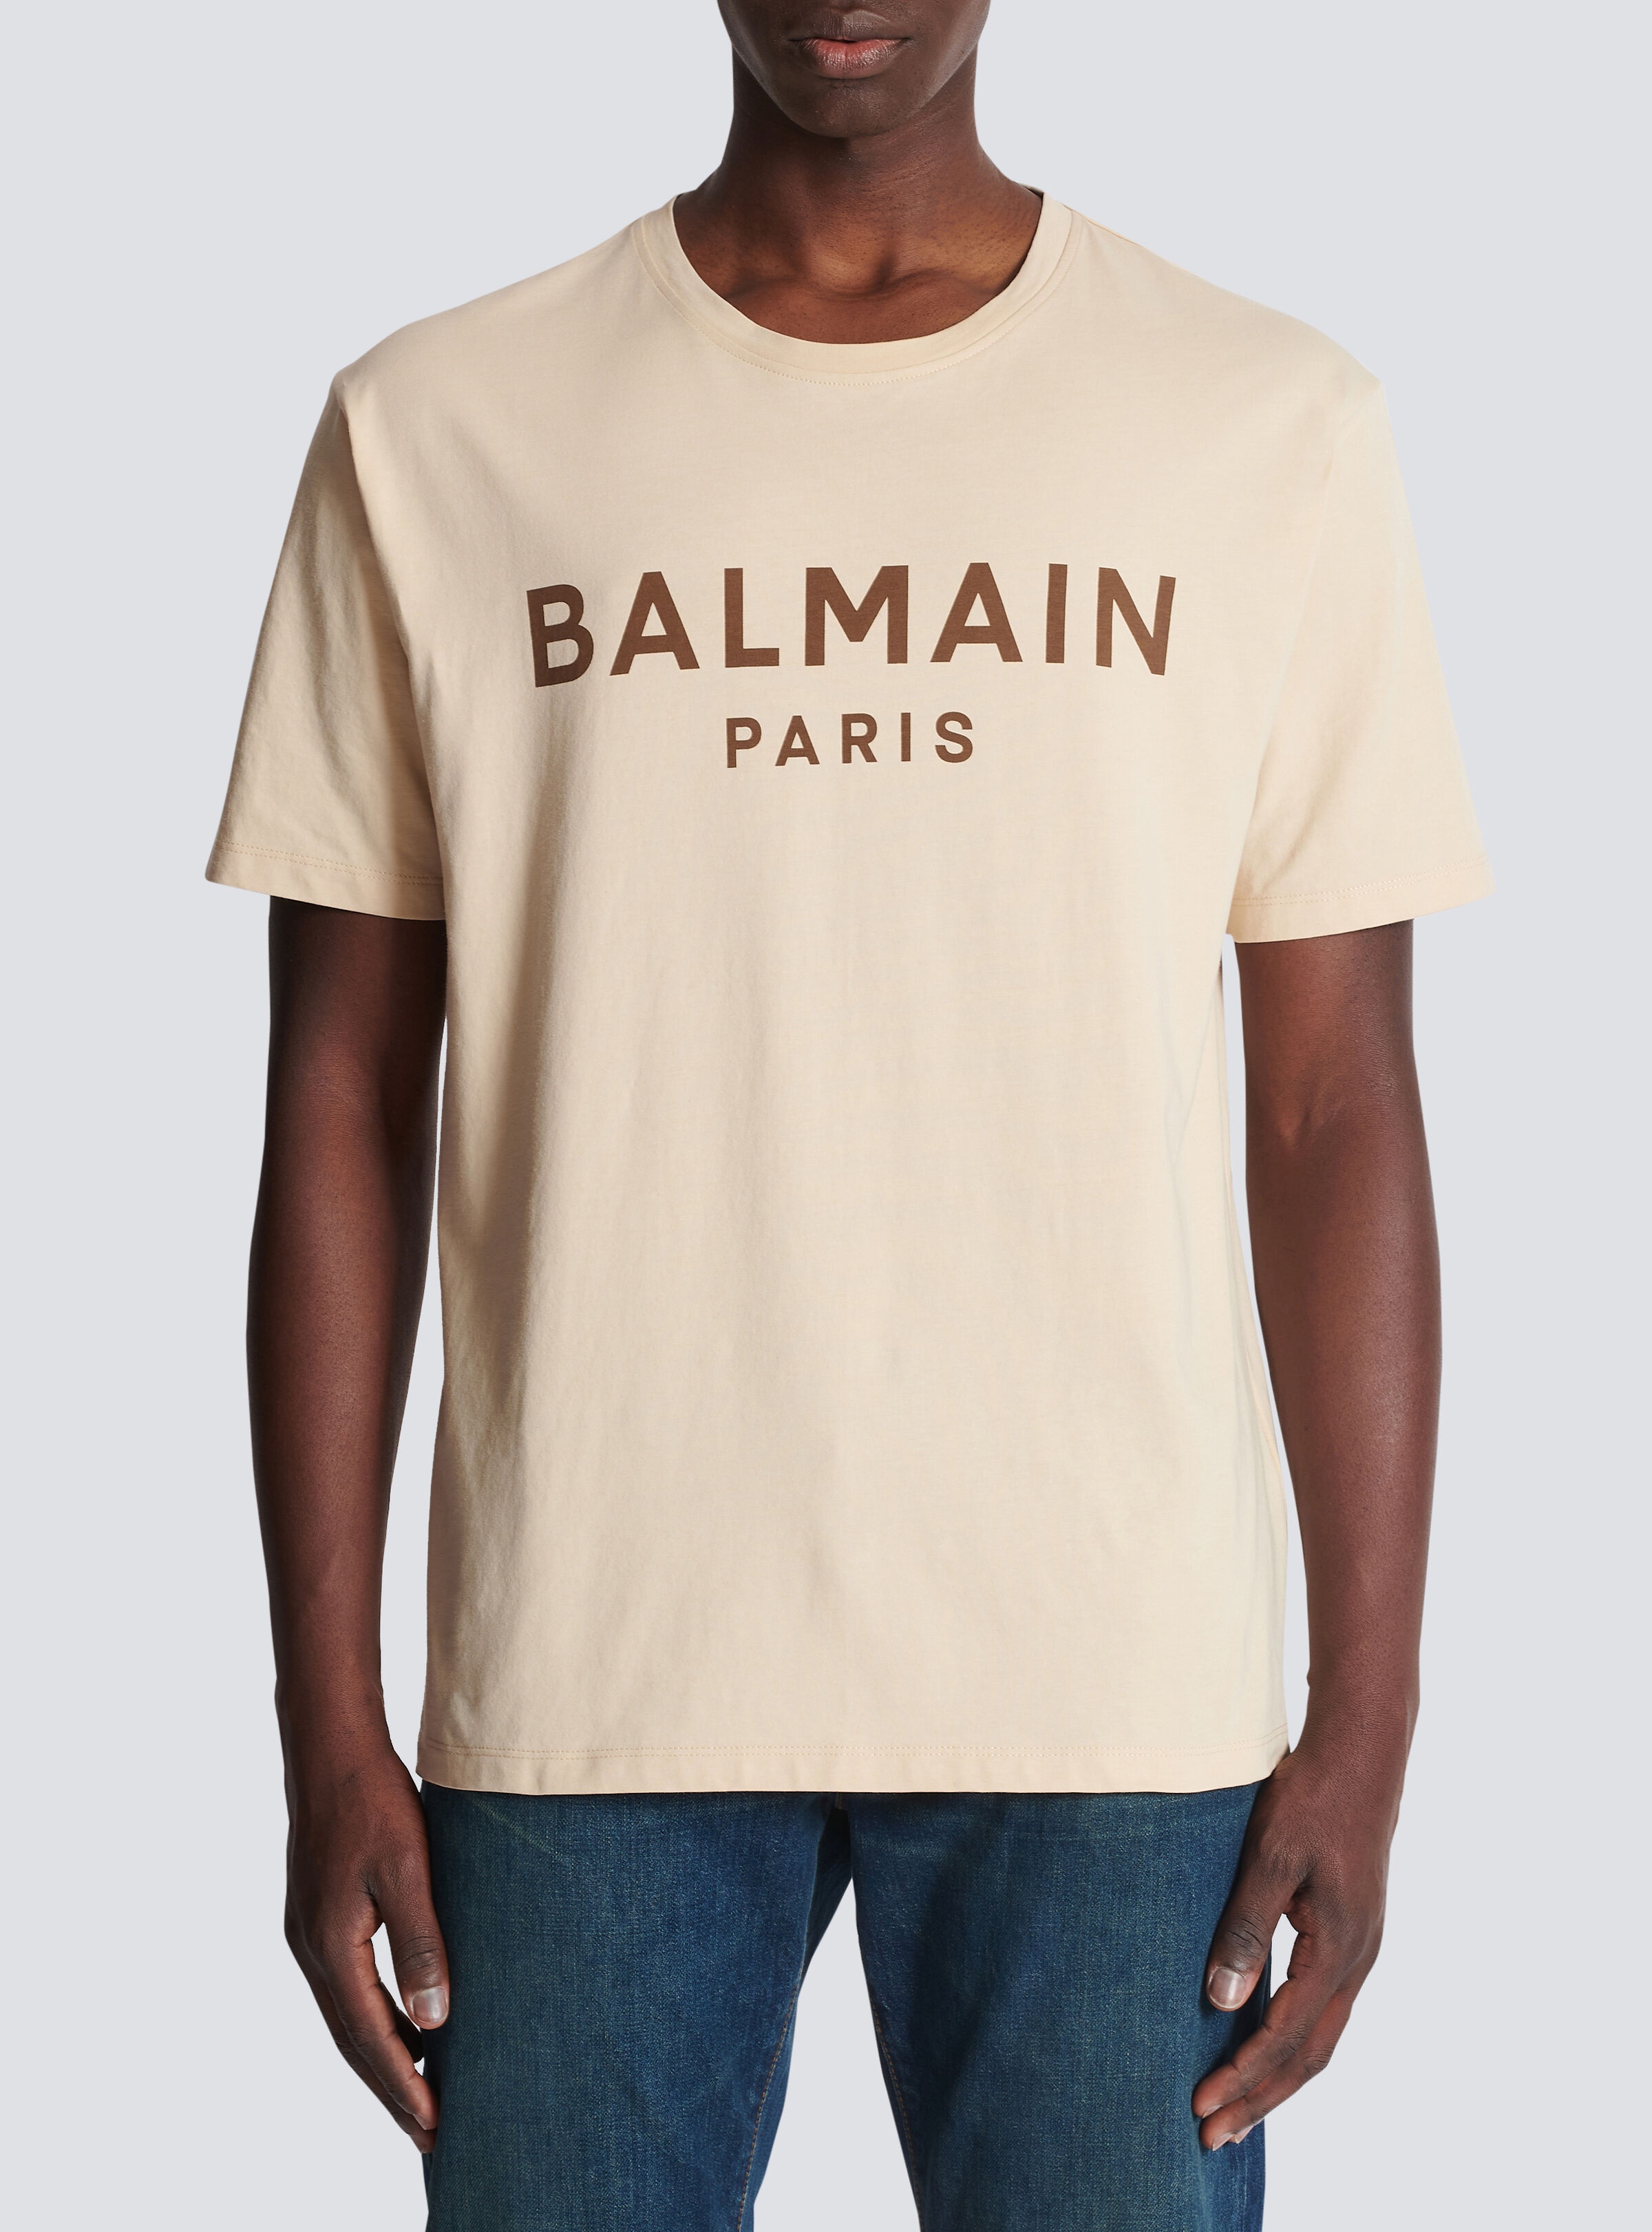 T-shirt with Balmain Paris print - 5